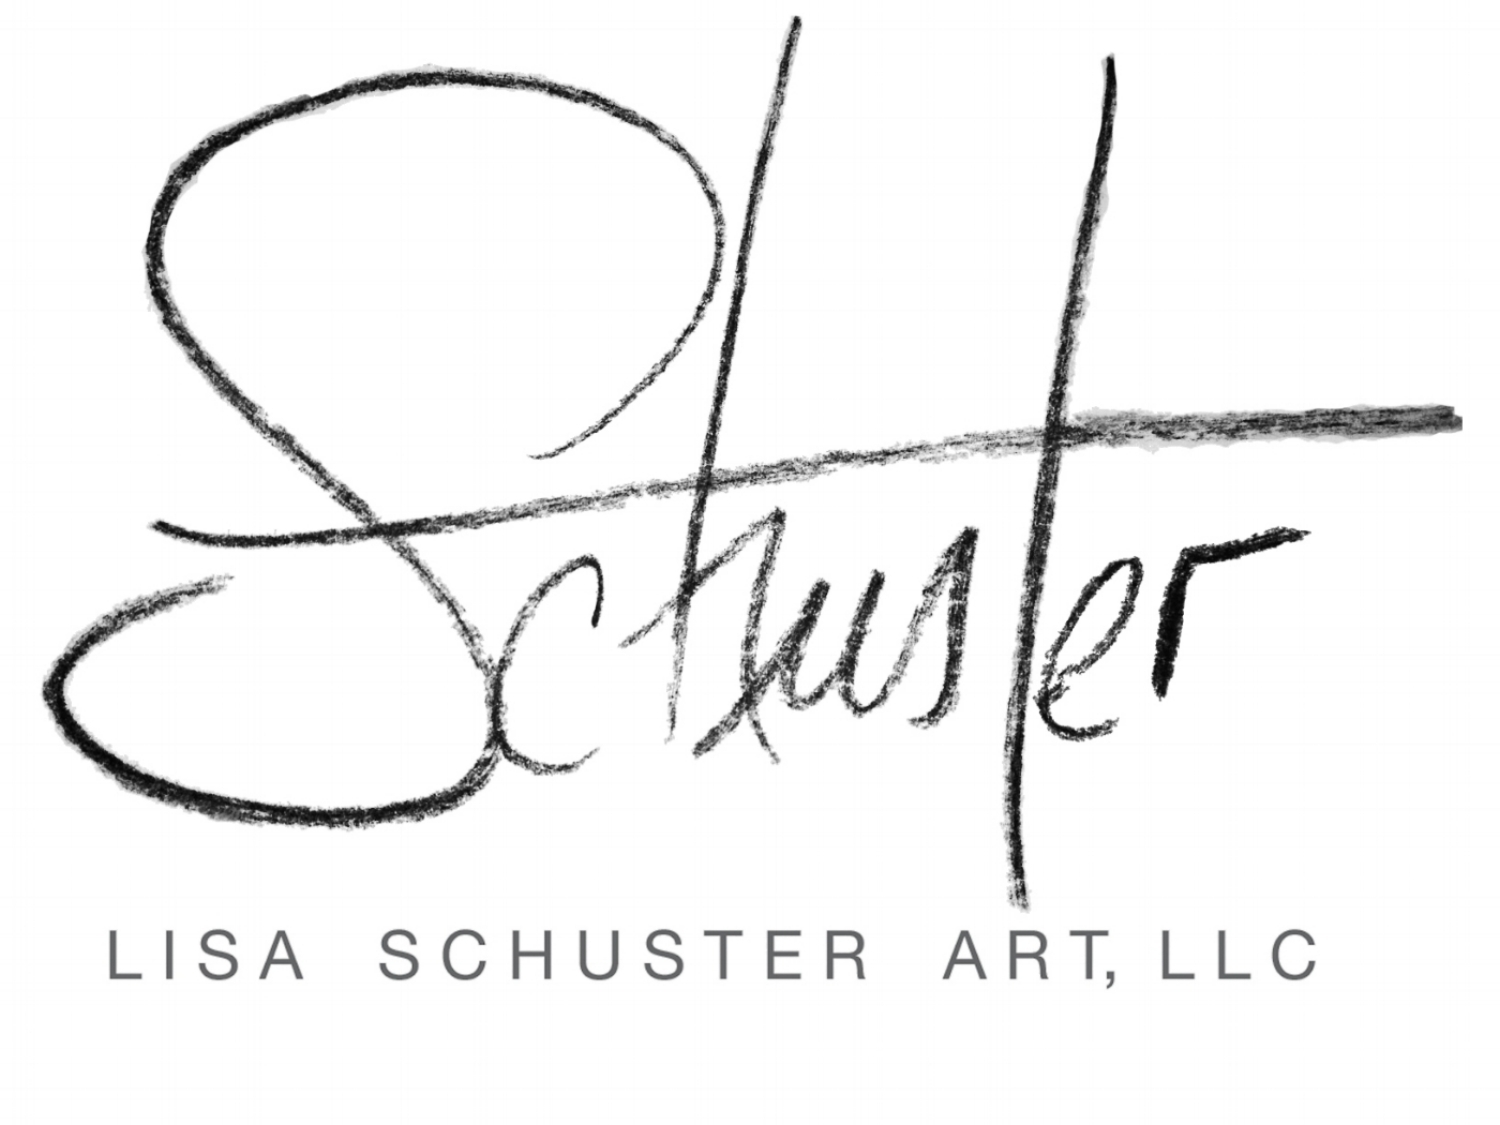 Lisa Schuster Art